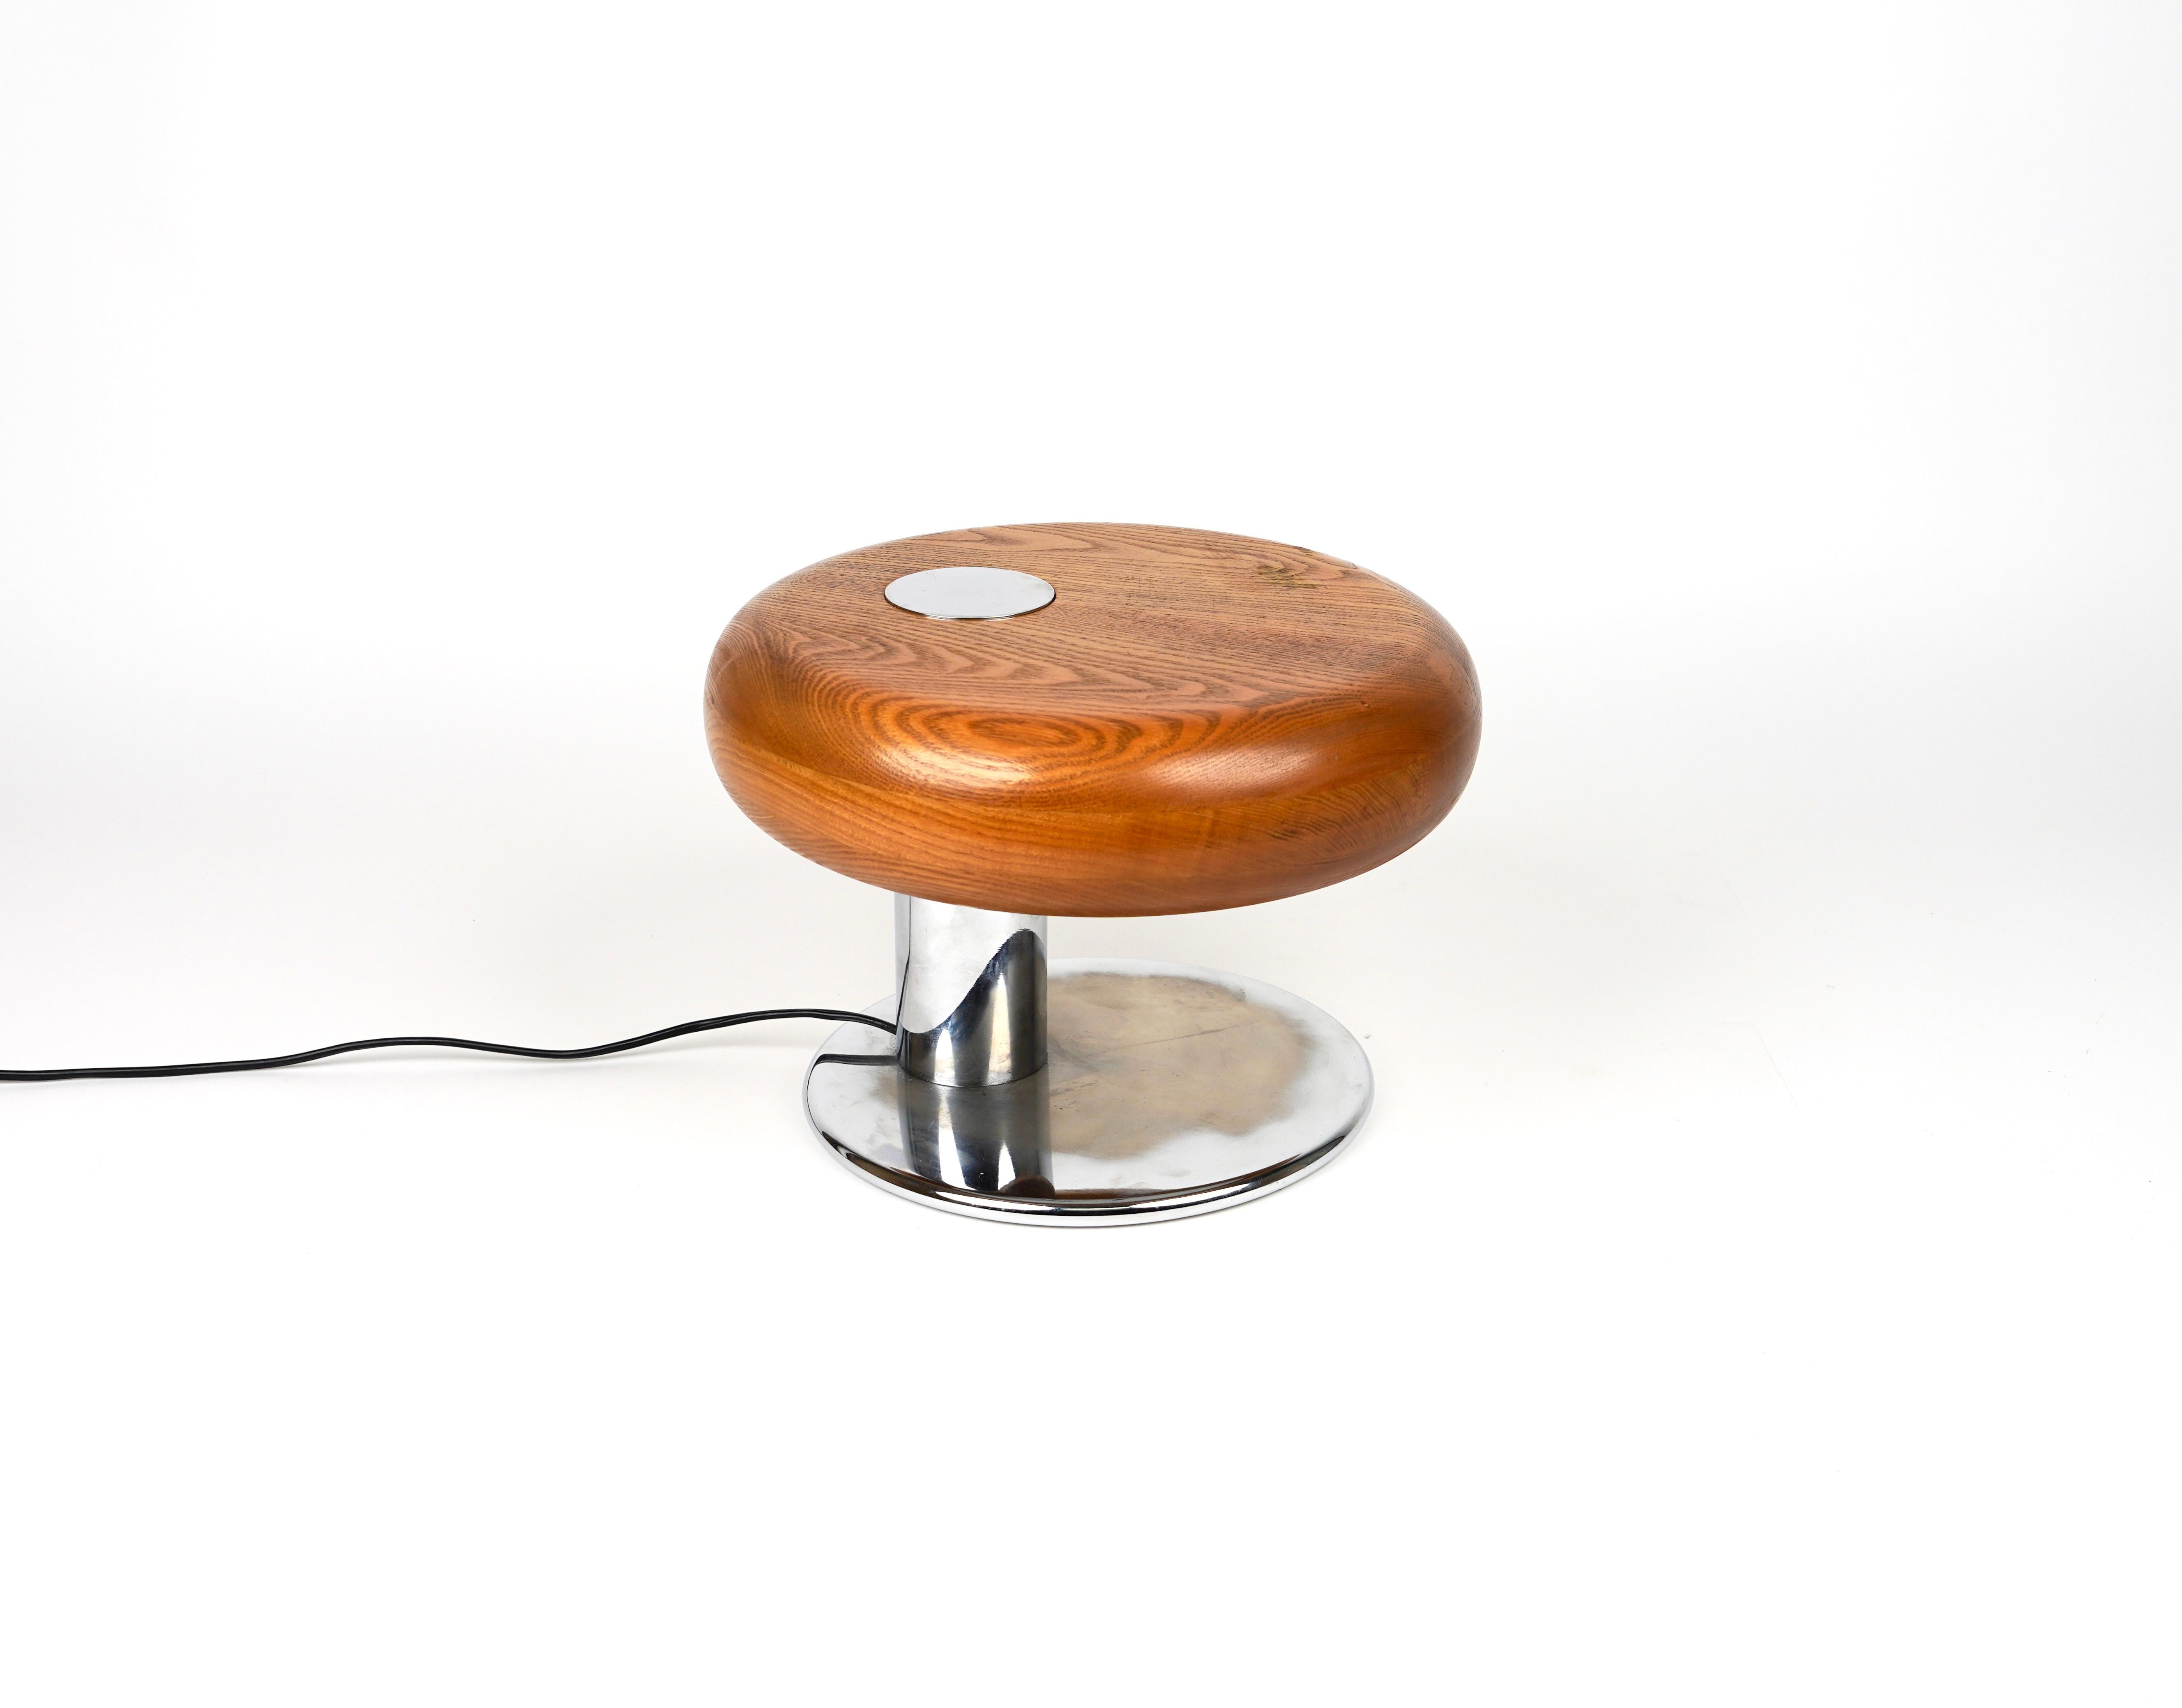 Incroyable lampe de table ronde unique du milieu du siècle en bois de hêtre et métal chromé.

Fabriqué en Italie dans les années 1970.

Il utilise 1 ampoule.  